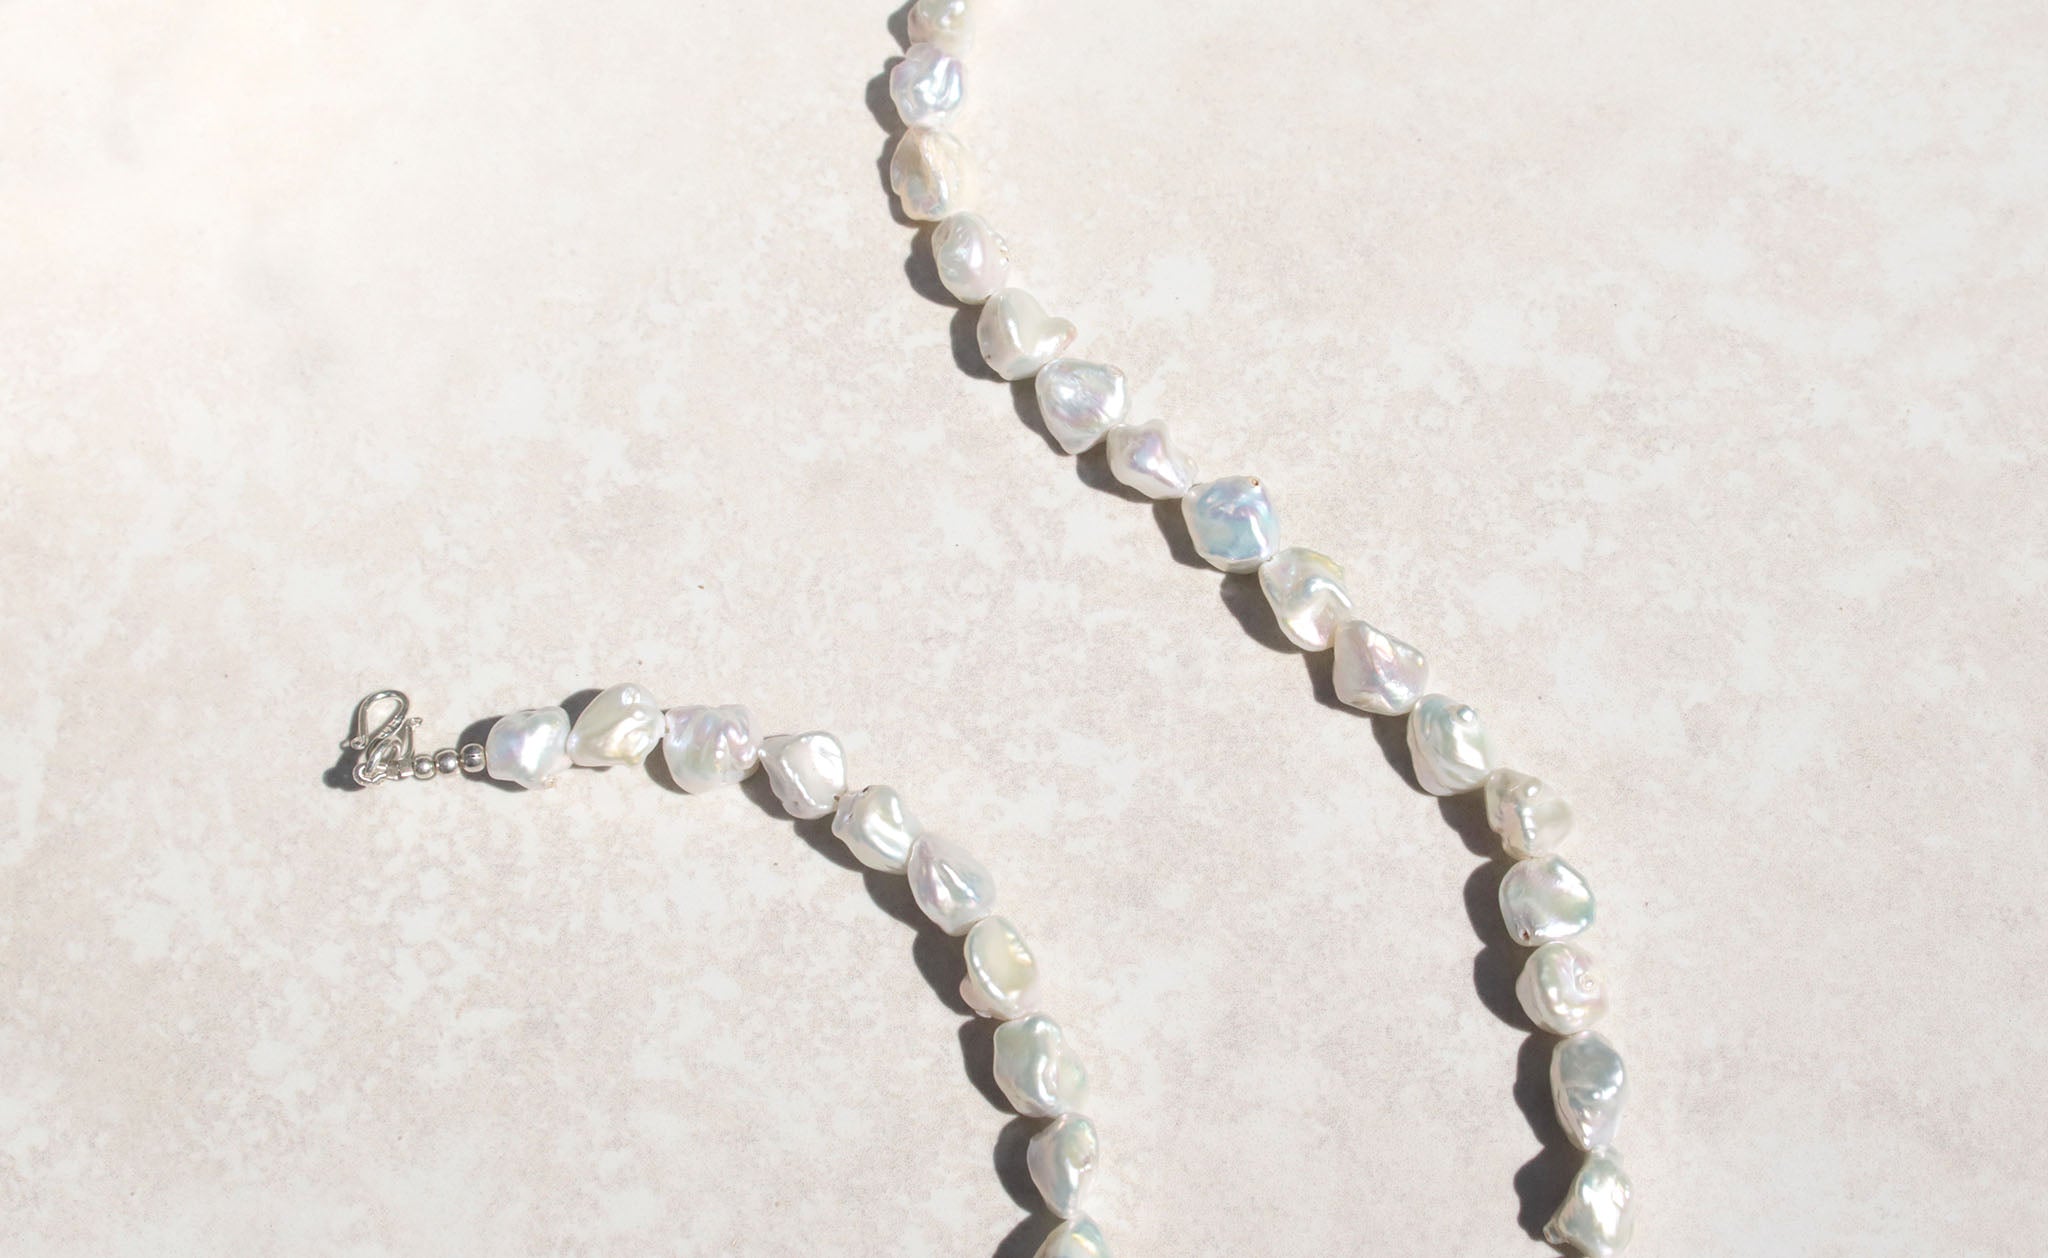 Silver princess baroque pearl necklace